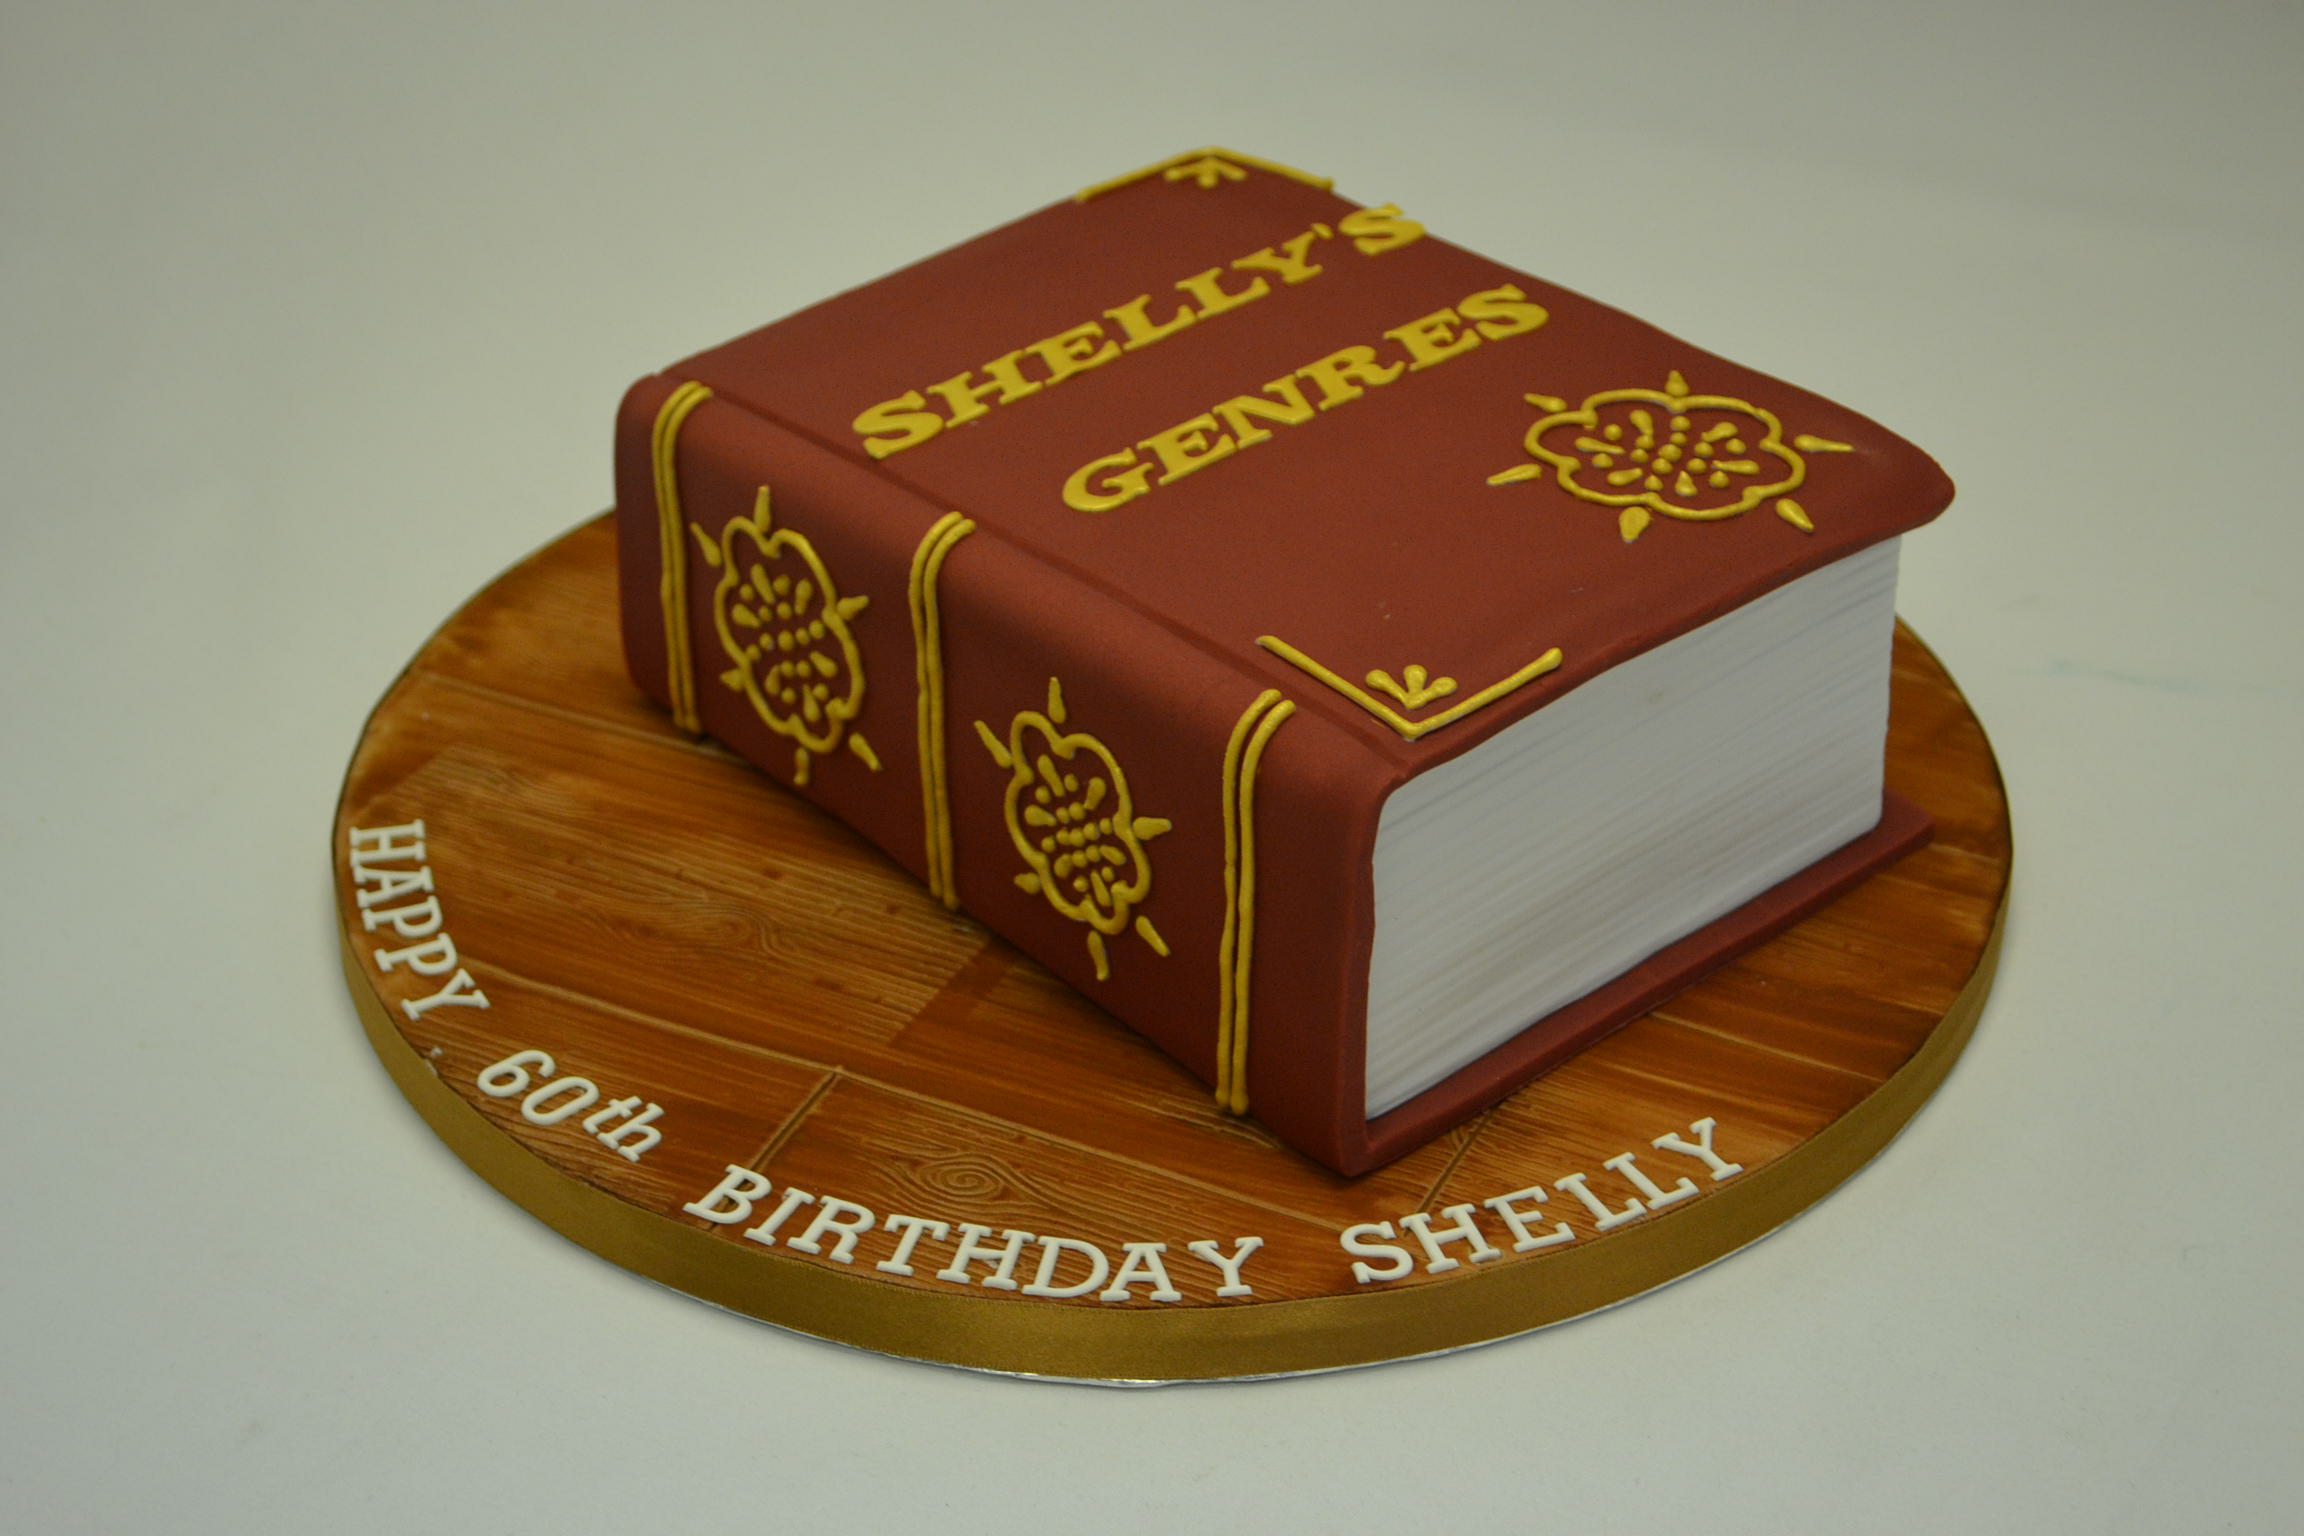 Closed Book Cake - Celebration Cakes - Cakeology